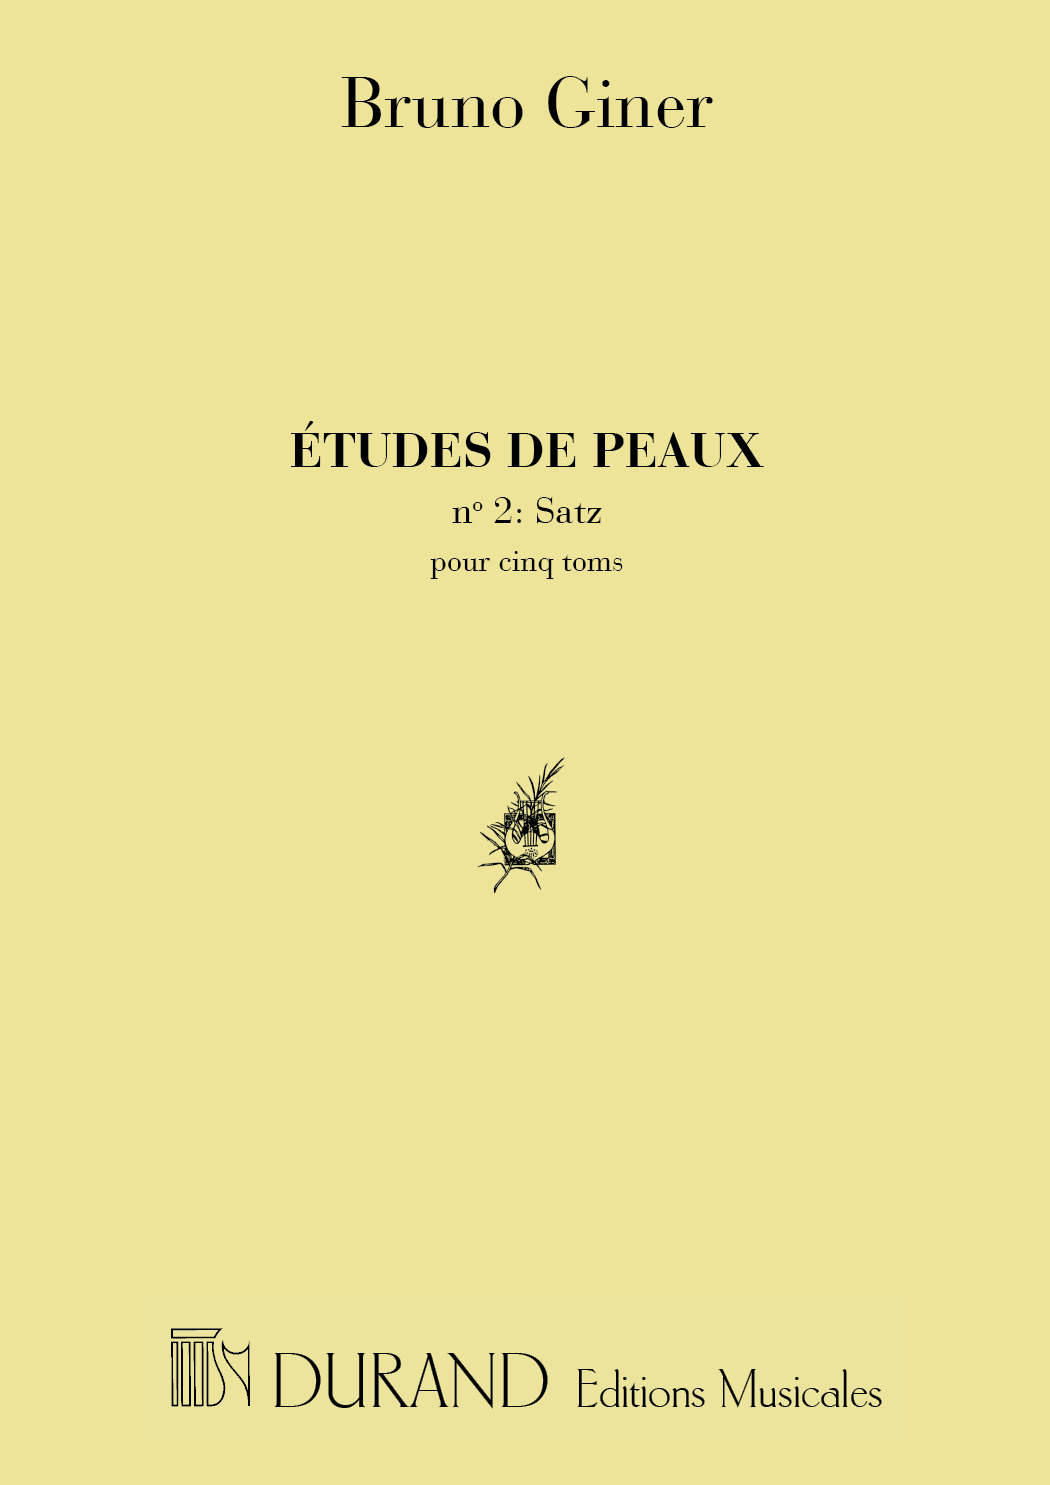 Bruno Giner: Etudes De Peaux N. 2: Satz  Pour Cinq Toms: Percussion